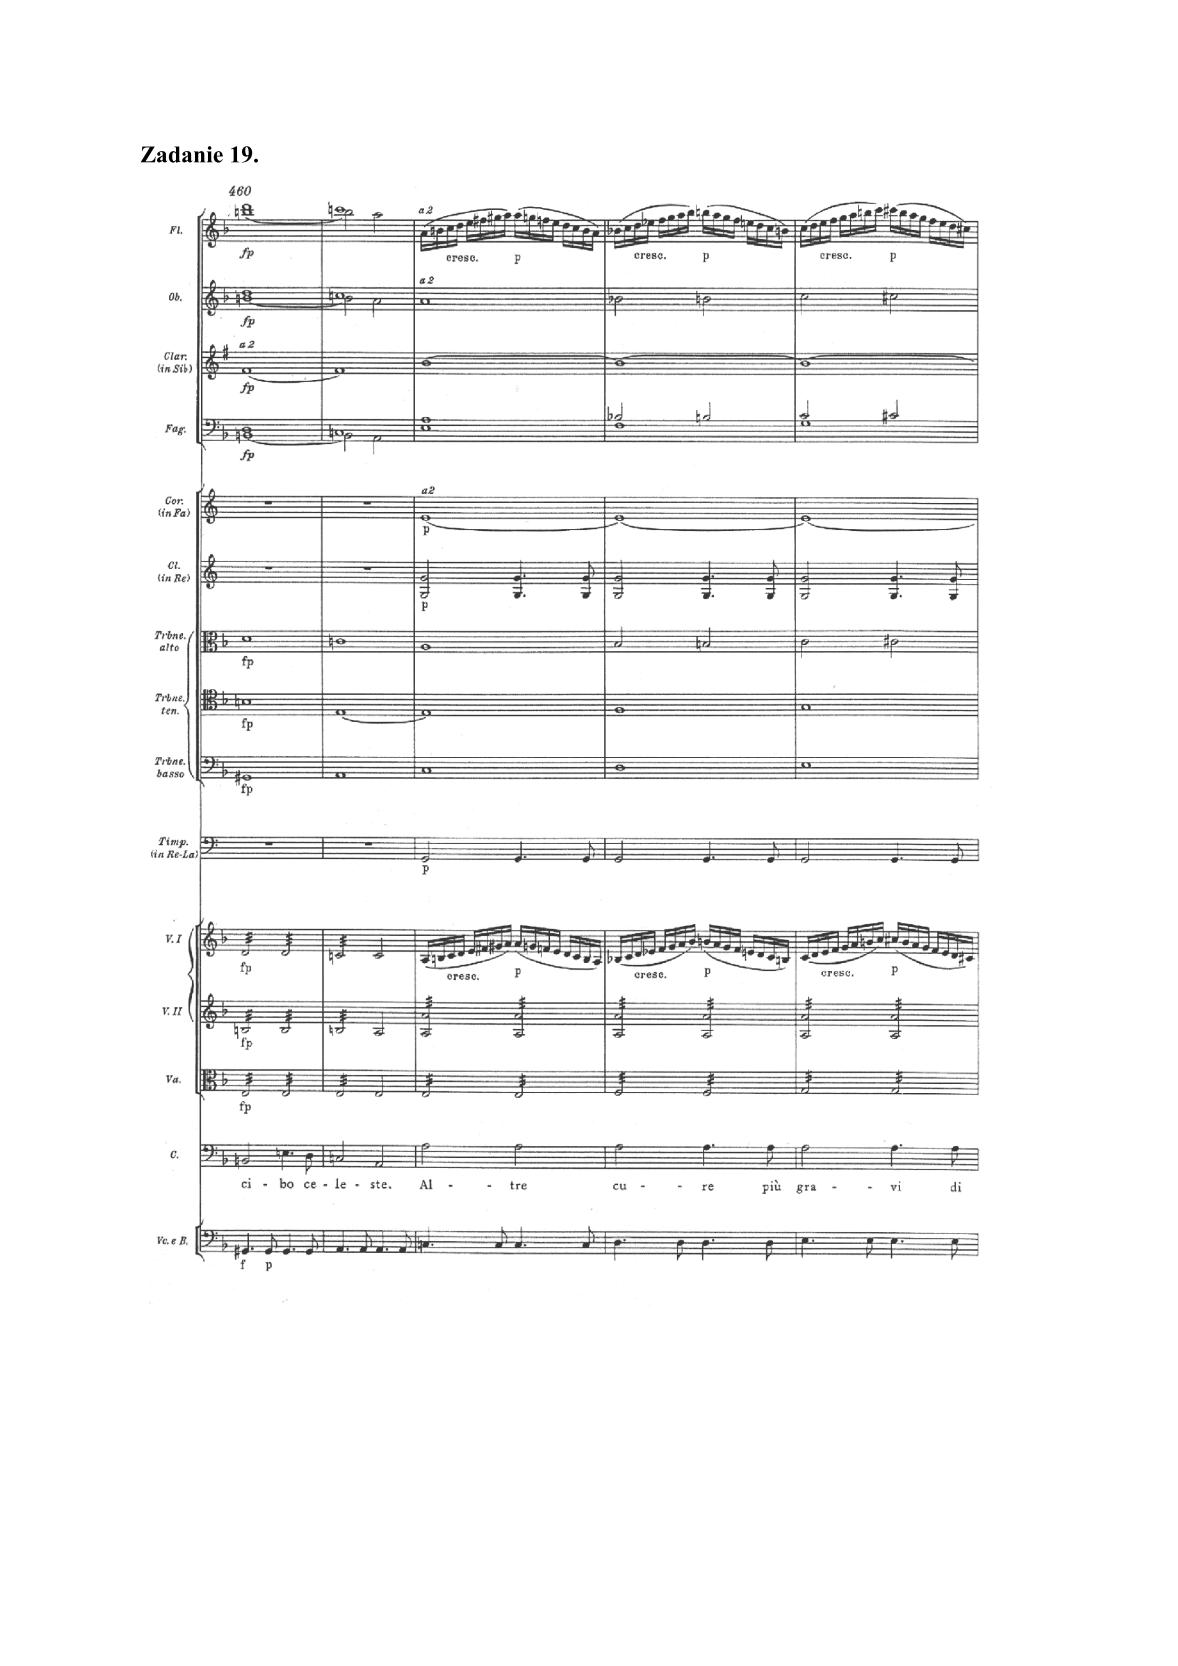 historia-muzyki-przykladowe-nuty-poziom-rozszerzony-matura-2014-str.19